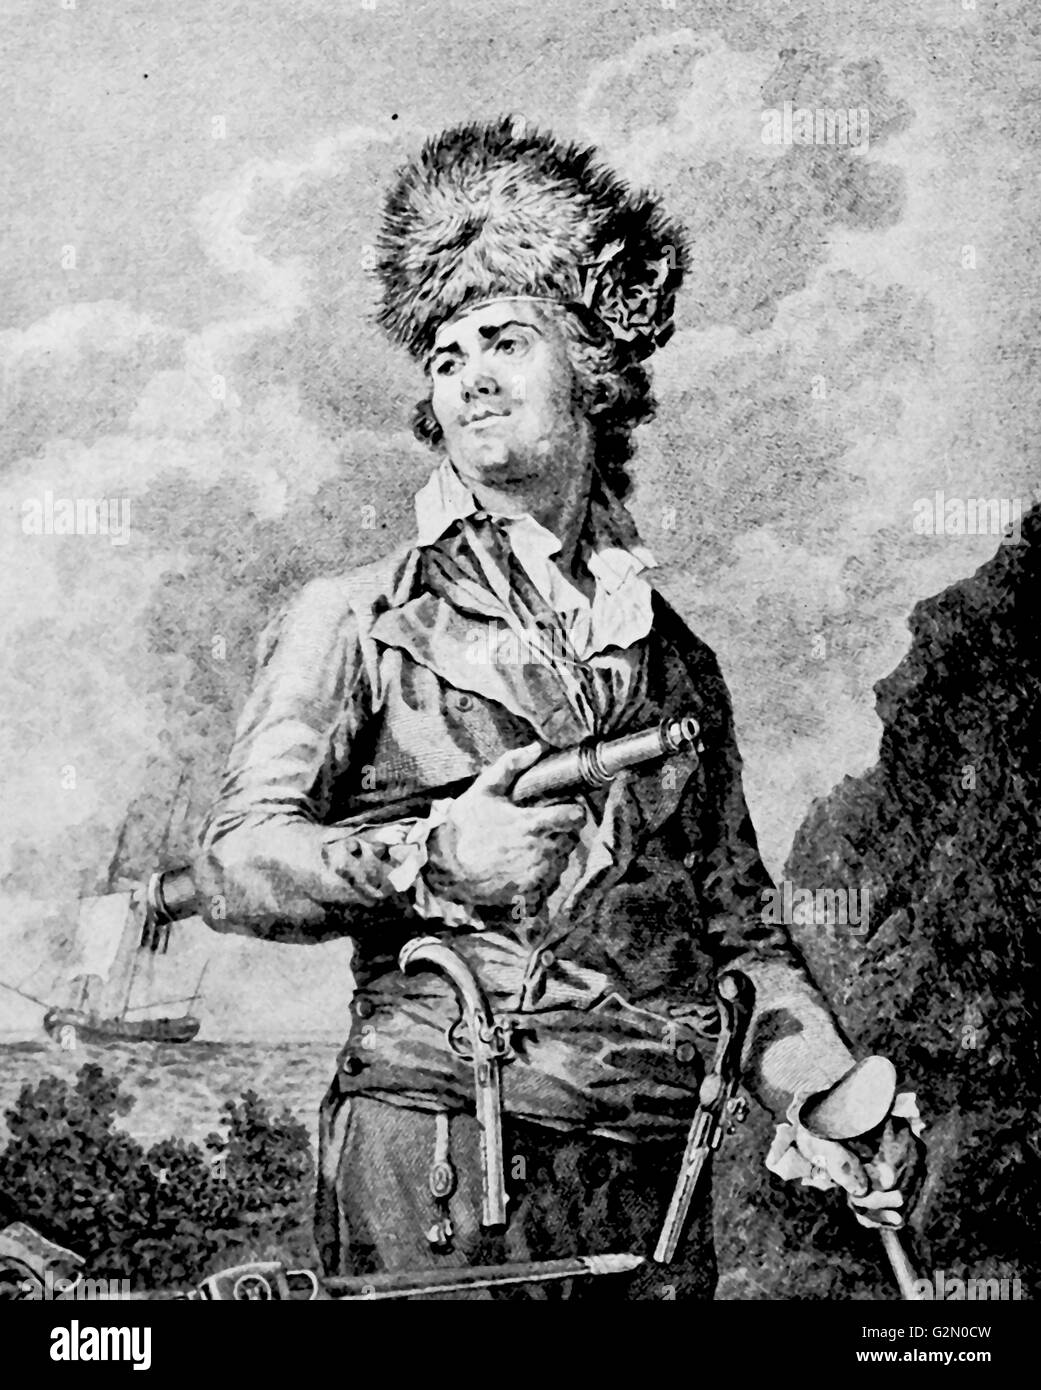 Pierre Le Turcq (18e siècle) (Français) pirate, corsaire active que pendant une courte période, de 1781 à 1782, mais c'était suffisant pour lui de devenir célèbre comme corsaire. Banque D'Images